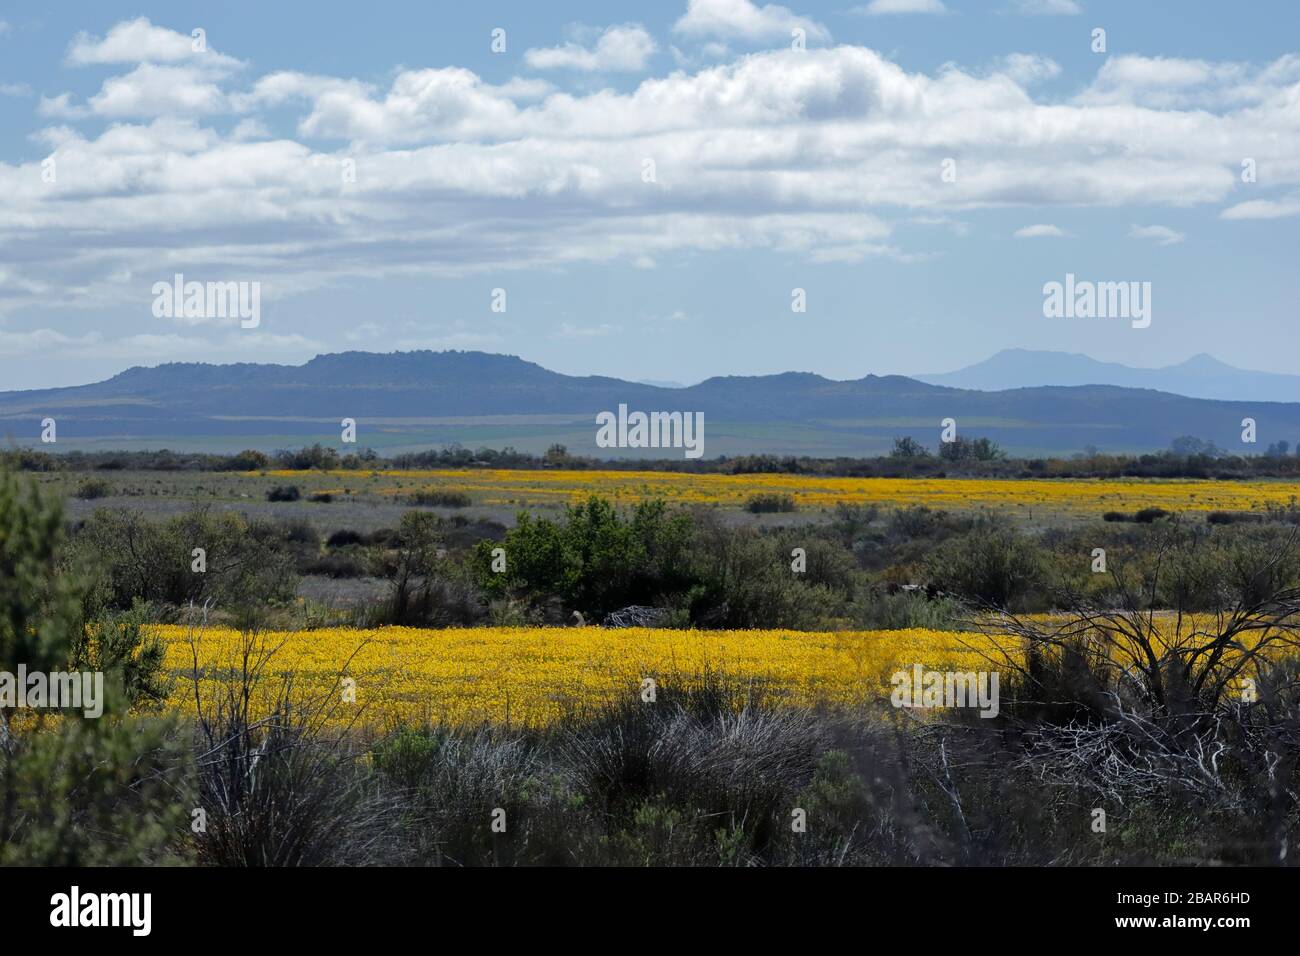 Les champs de fleurs sauvages illuminent le paysage de Nieuwoudtville, dans le nord du Cap, en Afrique du Sud Banque D'Images